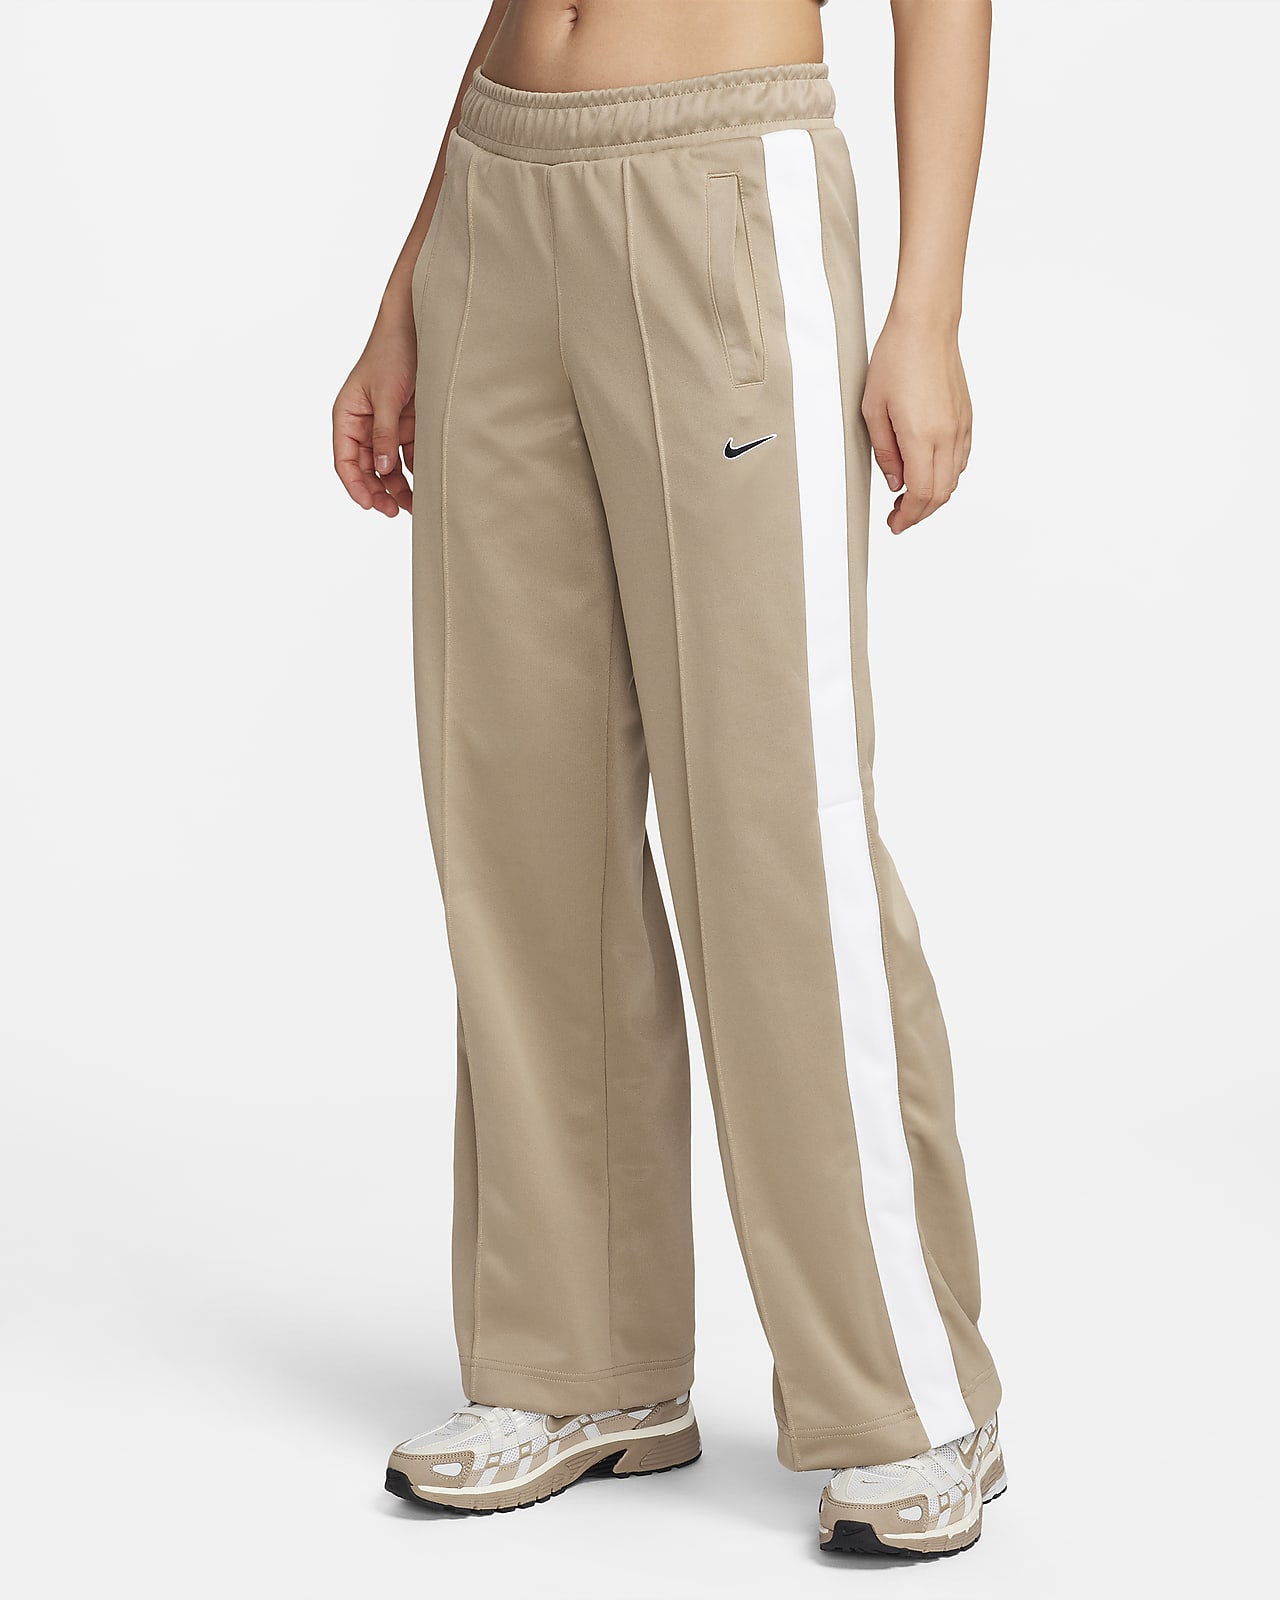 Shop Trouses for Women Online | Trouser Pants & Culottes | Kraus Jeans